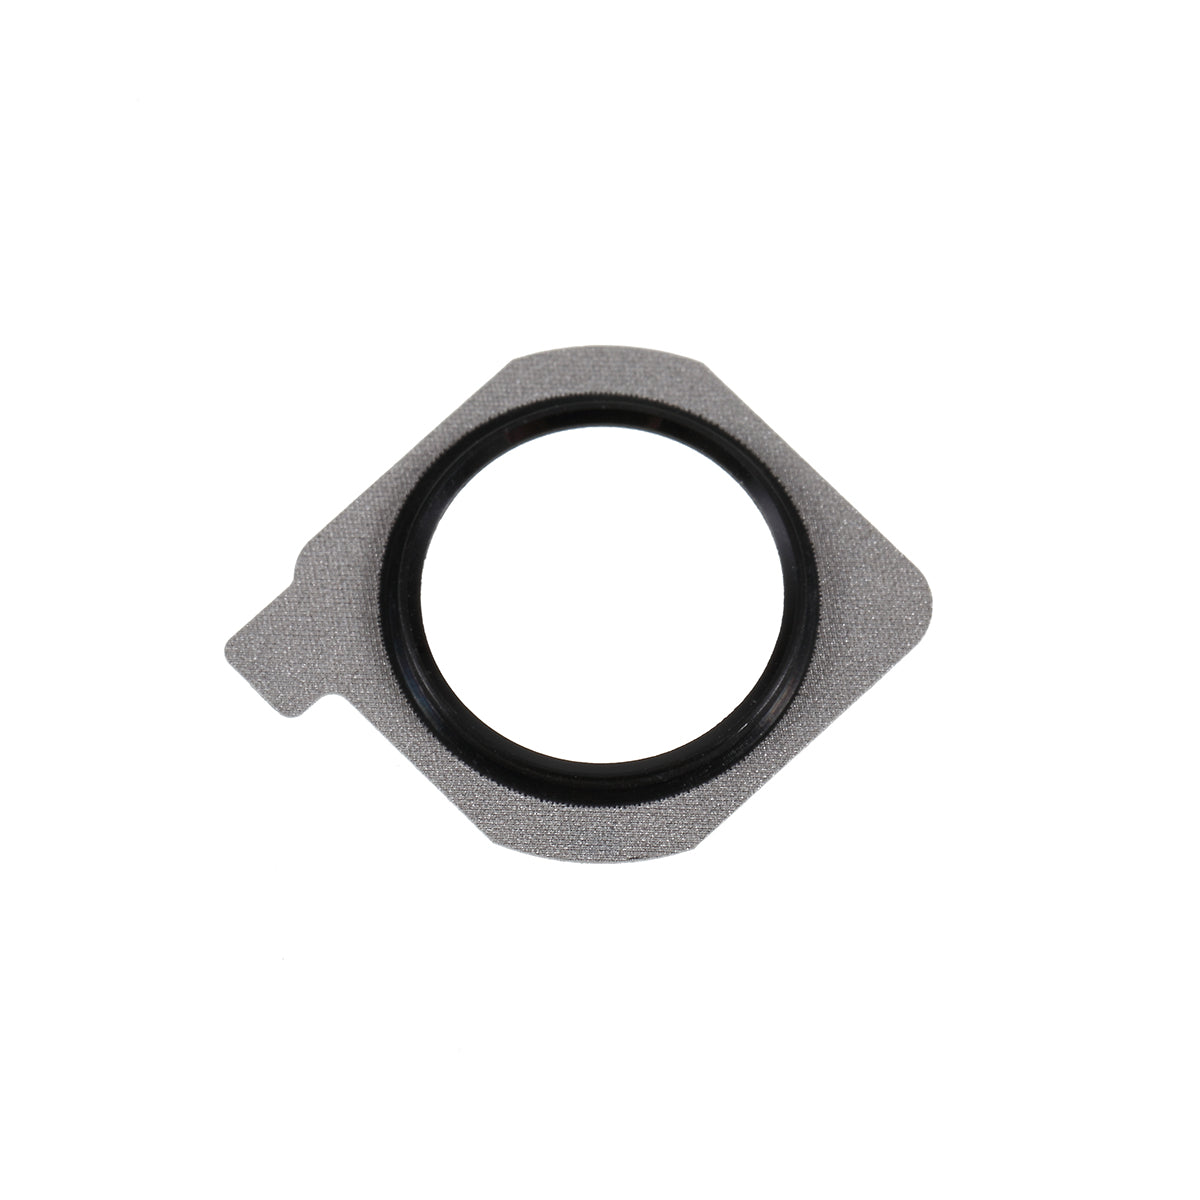 OEM Fingerprint Keypad Plate Holder Bracket Replacement for Huawei P20 Lite/Nova 3e - Black